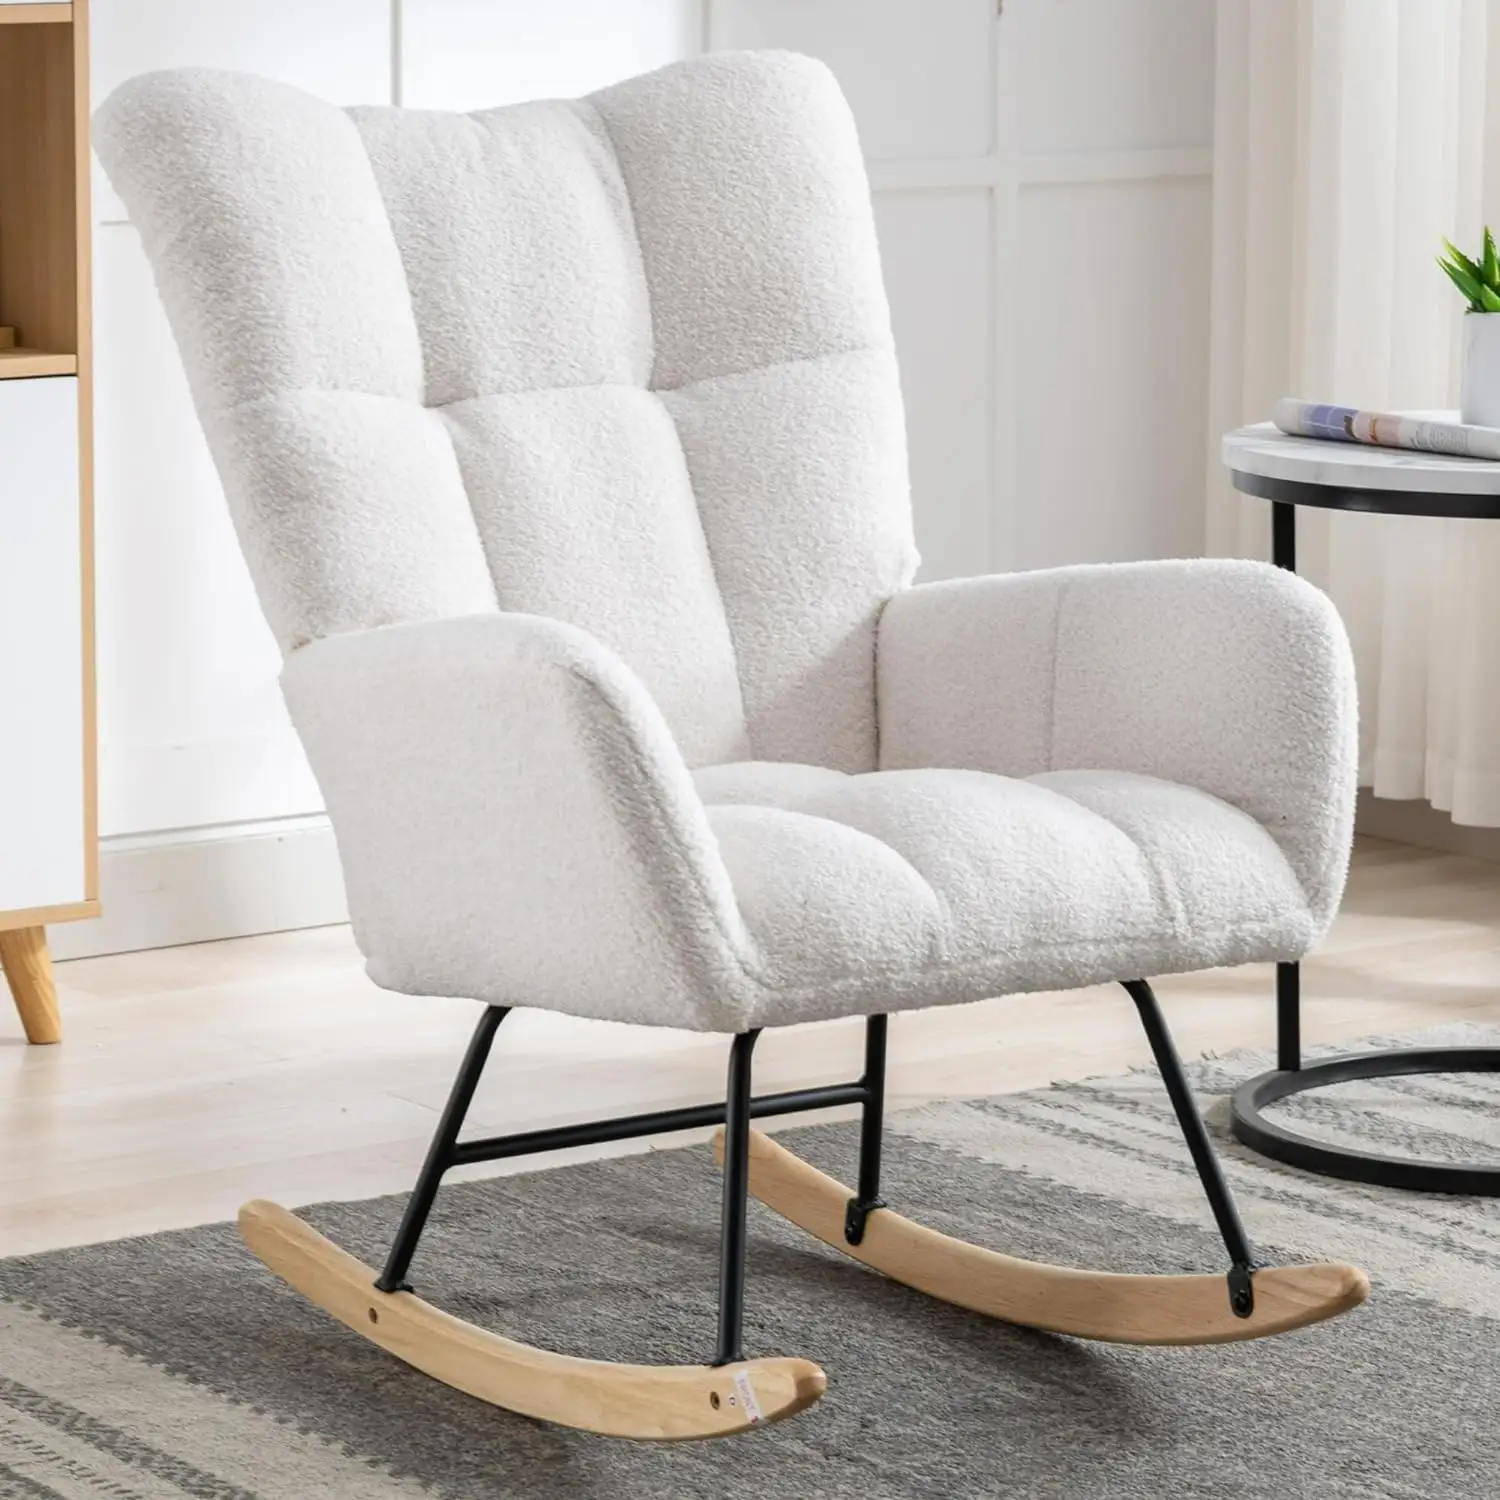 Chaise à bascule moderne confortable pour chambre à coucher salon chaise de planeur Portable chaise à bascule de loisirs